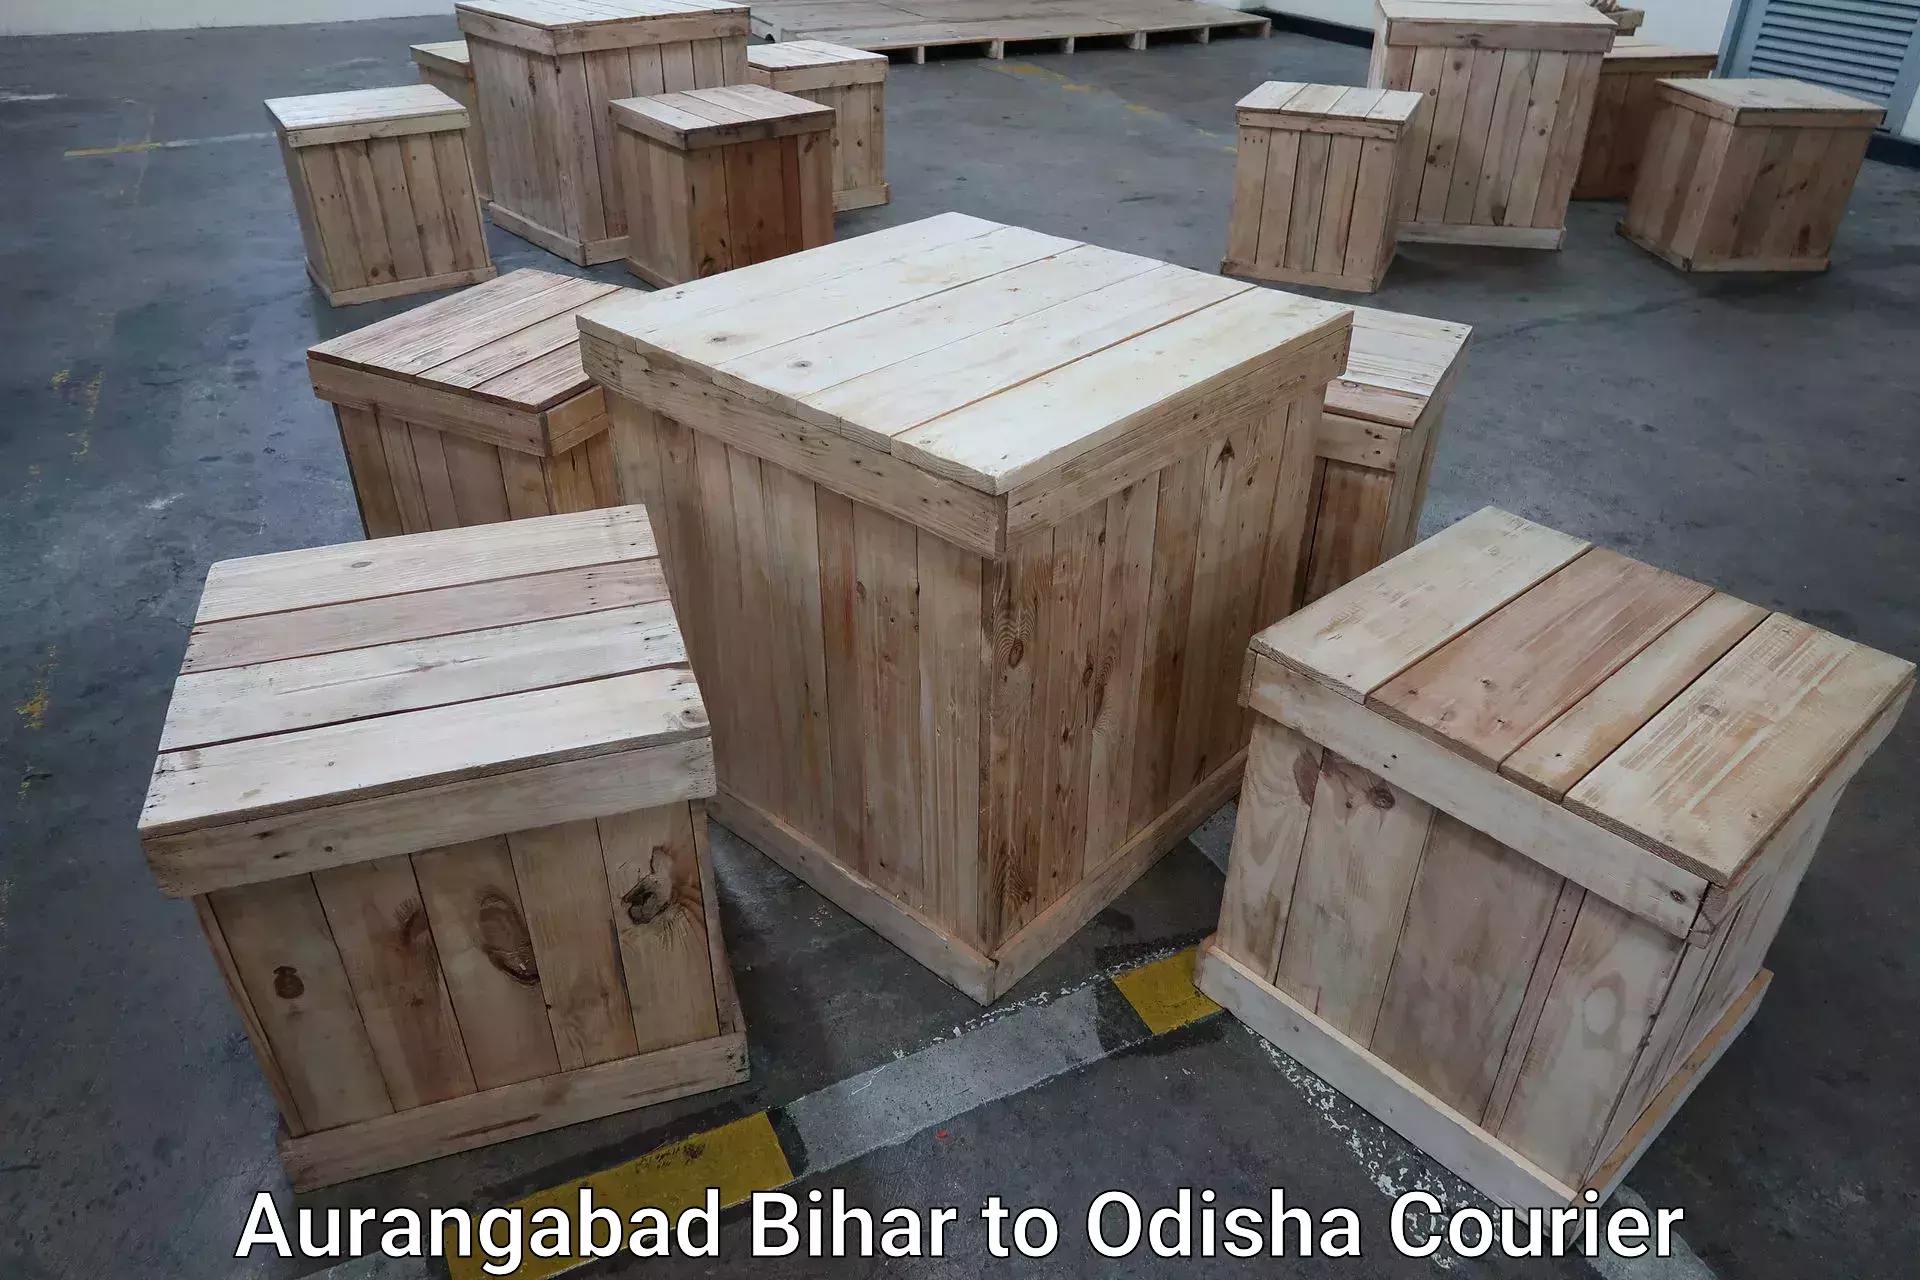 Baggage shipping rates calculator Aurangabad Bihar to Agarpada